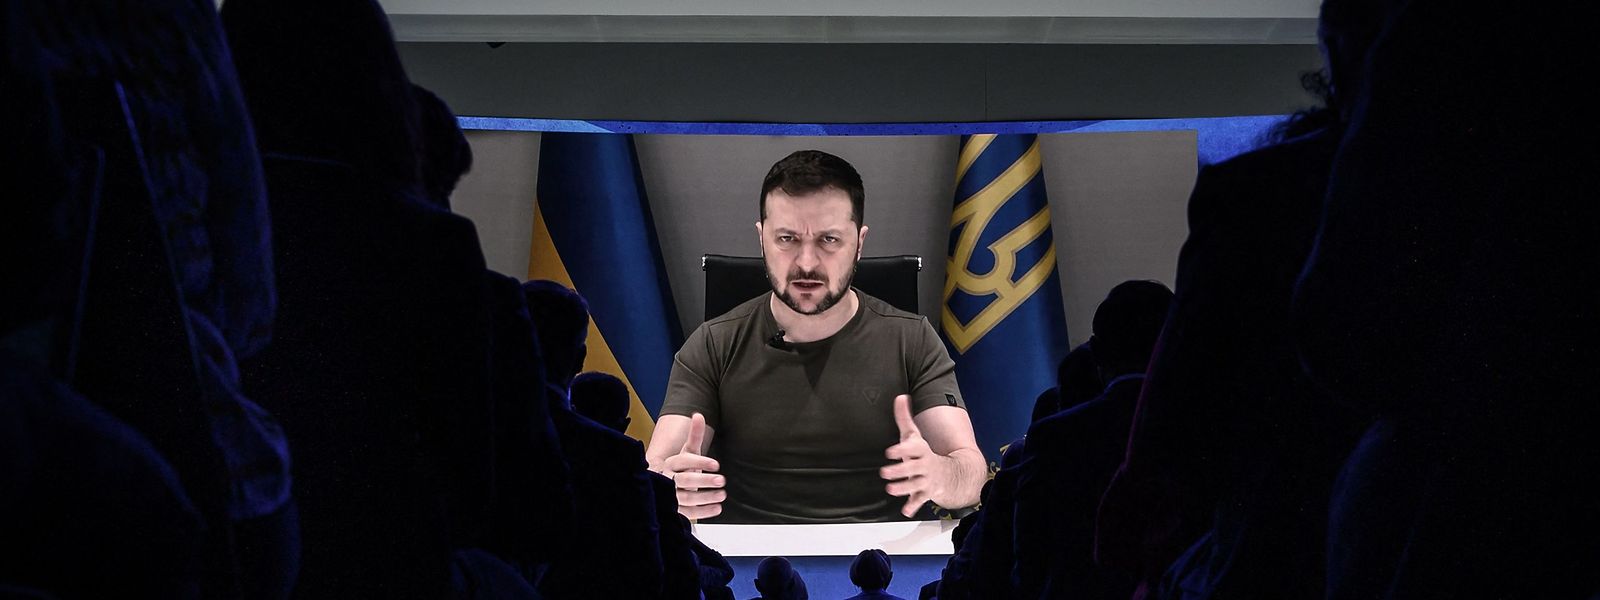 O Presidente ucraniano, Volodymyr Zelesnky, aparece num ecrã gigante durante o seu discurso por videoconferência no âmbito da reunião anual do Fórum Económico Mundial em Davos.